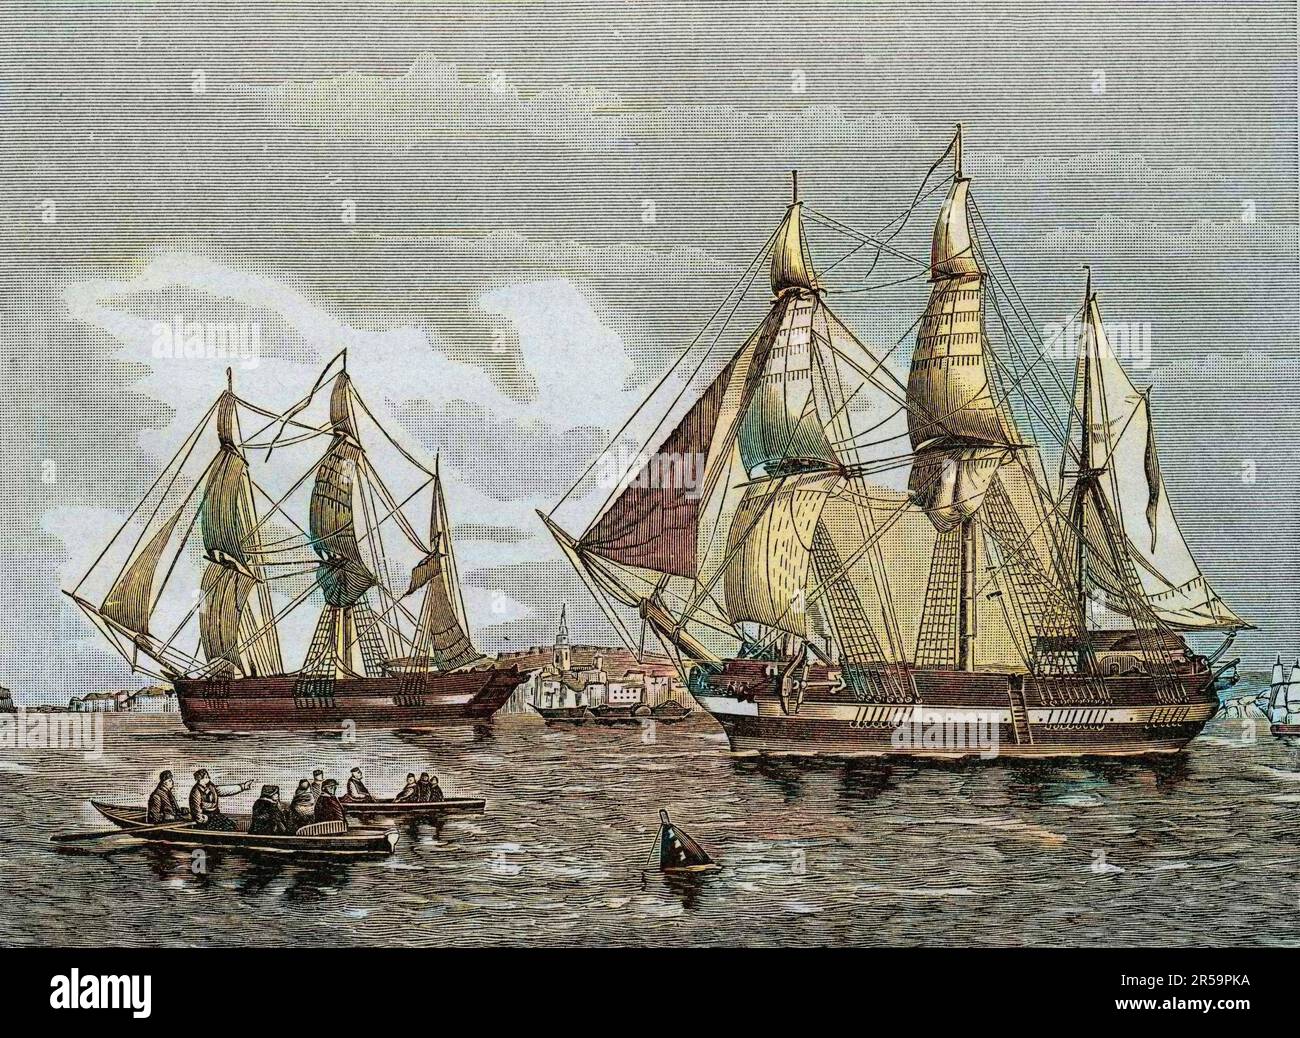 Les navires 'Erebus' et 'terror' lors de l'expedition dirigee par Sir John Franklin (1786-1847), dans les glaces. Il 'Erebus' e il 'terrore' - Sir John Franklin (1786-1847), ufficiale navale britannico ed esploratore artico comandò la spedizione 1845 delle navi 'Erebus' e 'terror' per cercare il passaggio Nord Ovest - tutti i membri della spedizione perirono - Foto Stock